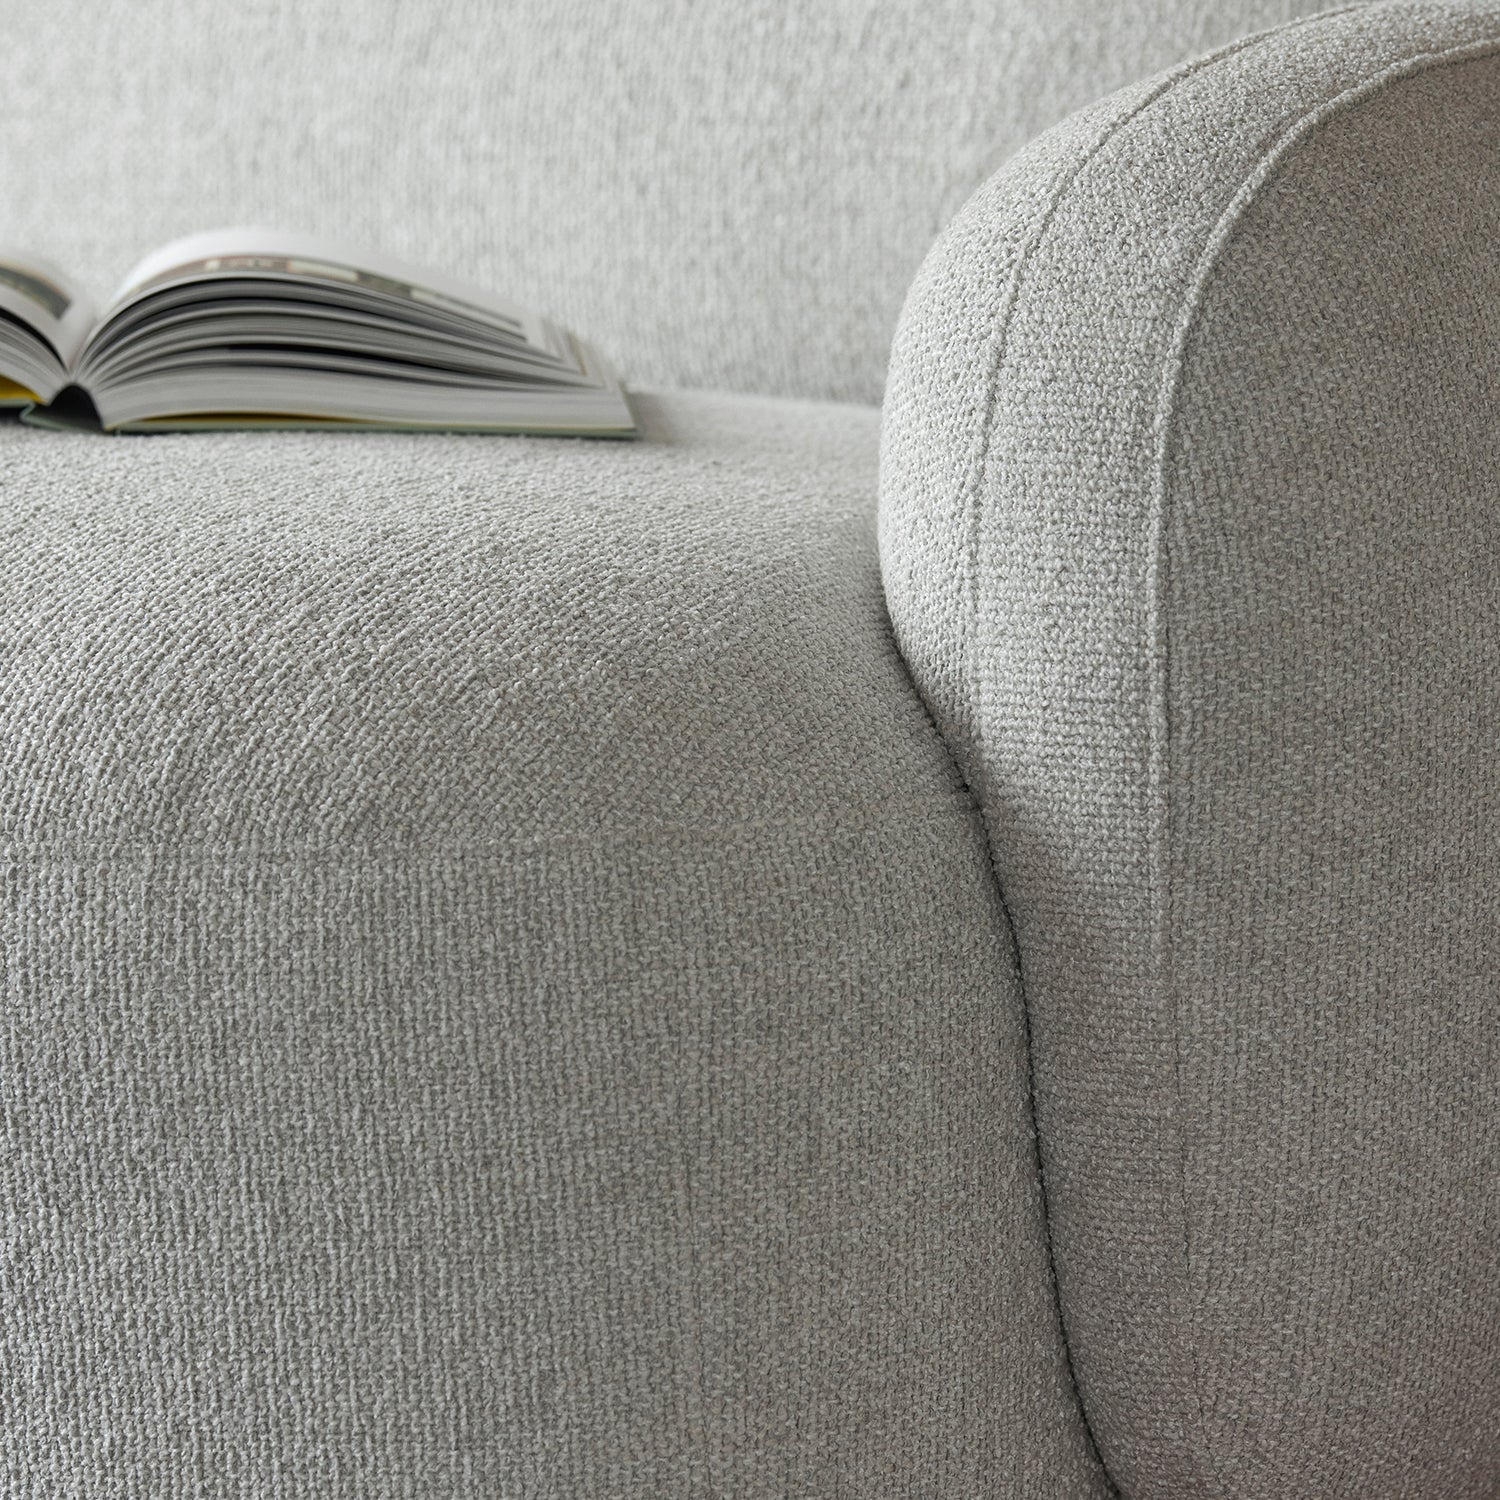 Gem Sofa - The Design Choice